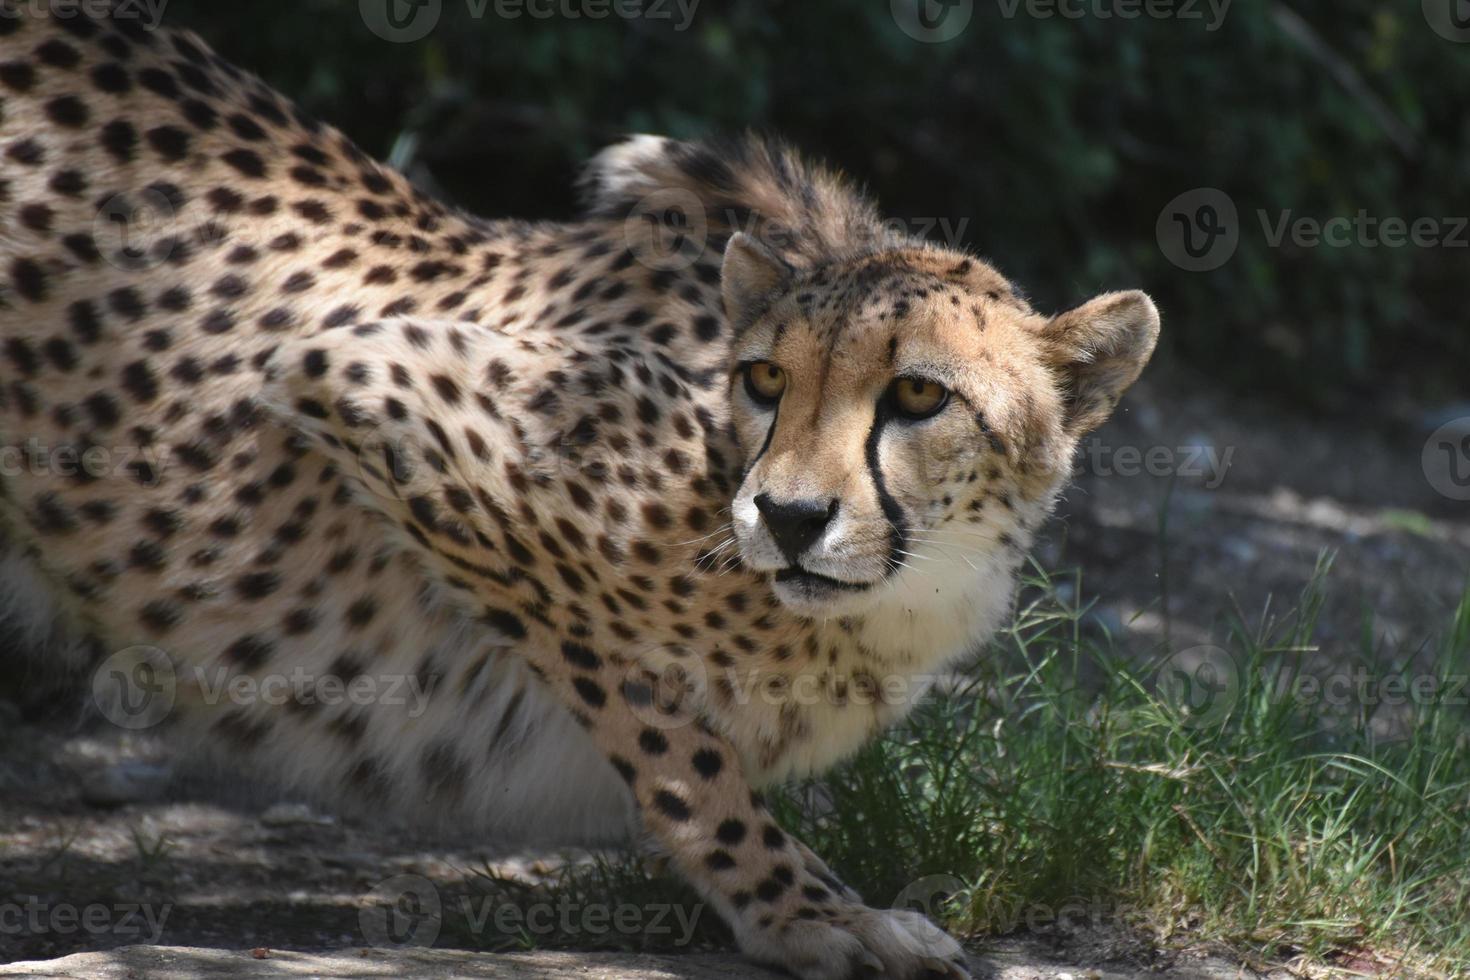 increíble gato guepardo agazapado en una roca plana siendo vigilante foto